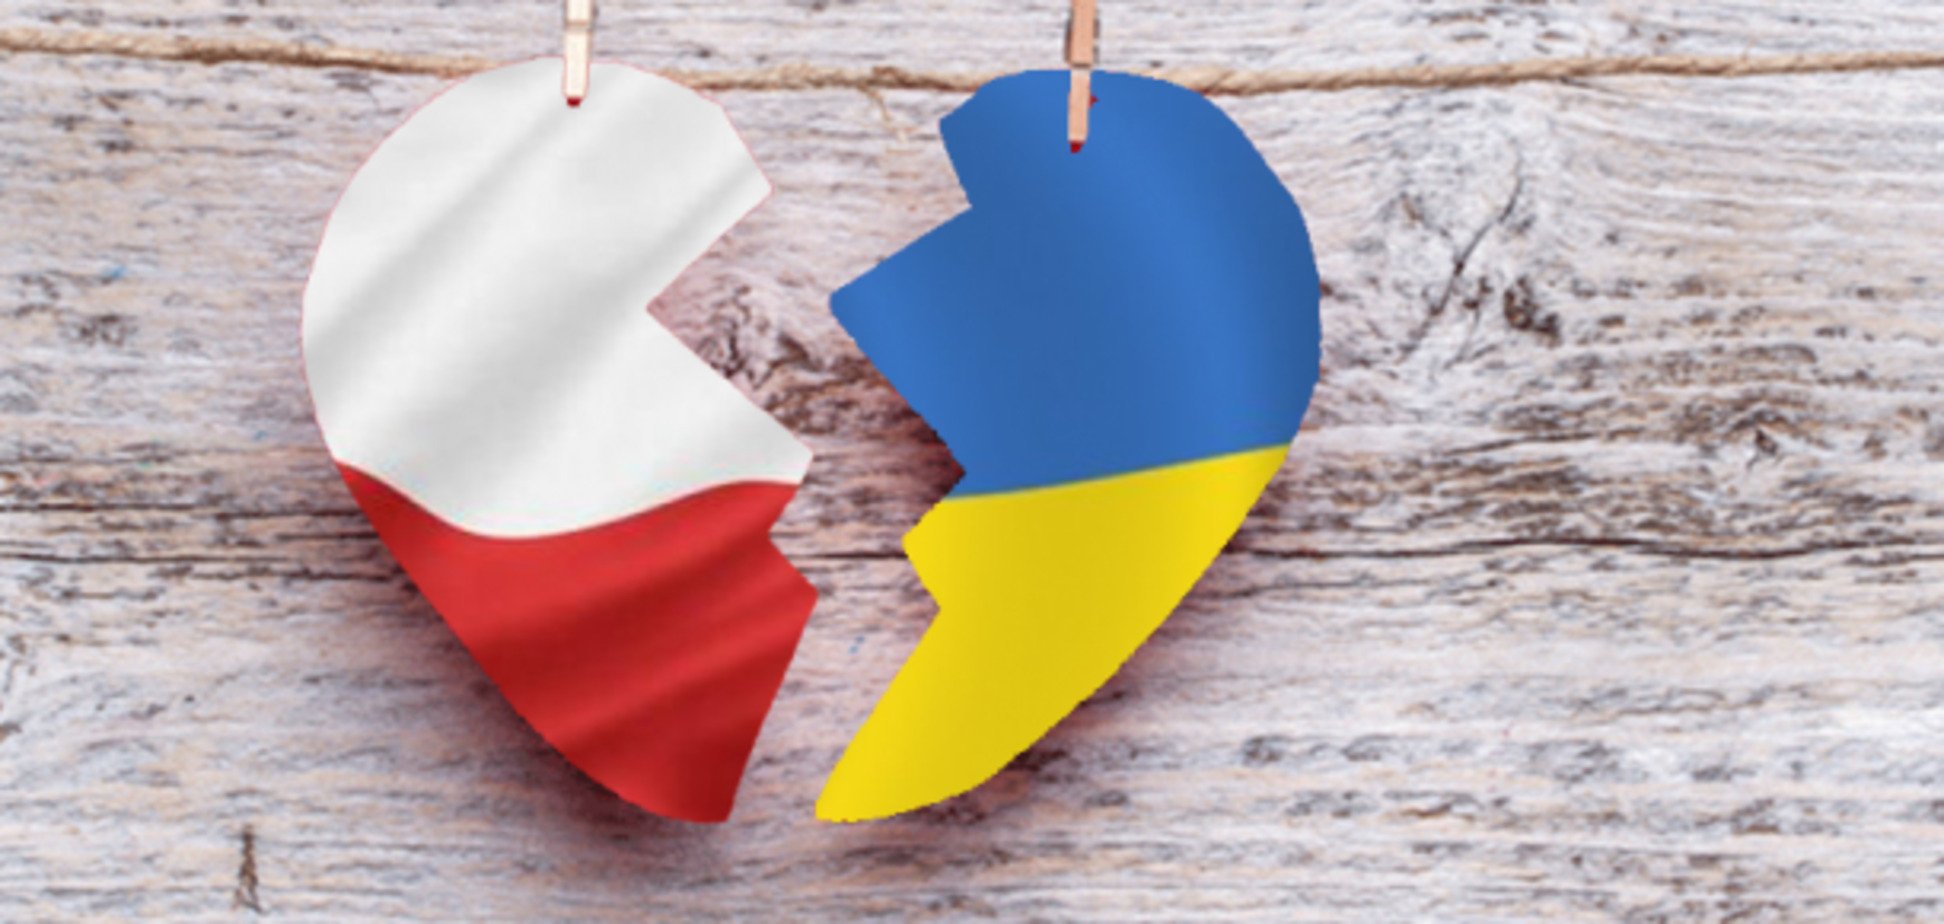 Польща в черзі на 'русскій мір': історик порекомендував полякам не нехтувати Україною